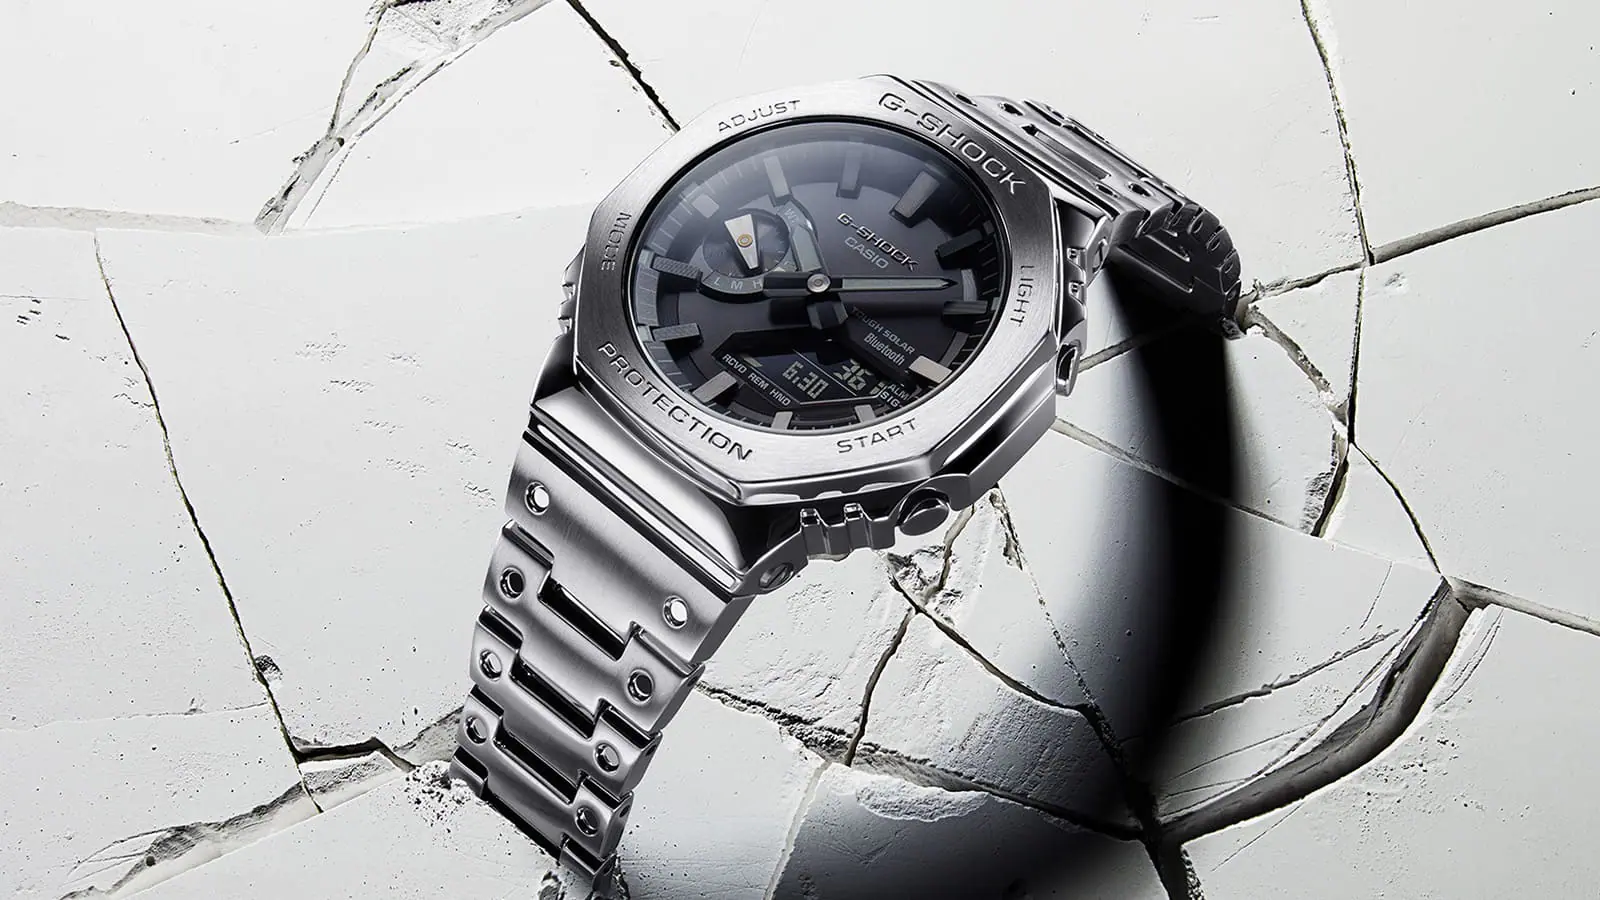 Reloj Casio plateado para hombre G-Shock GM-B2100